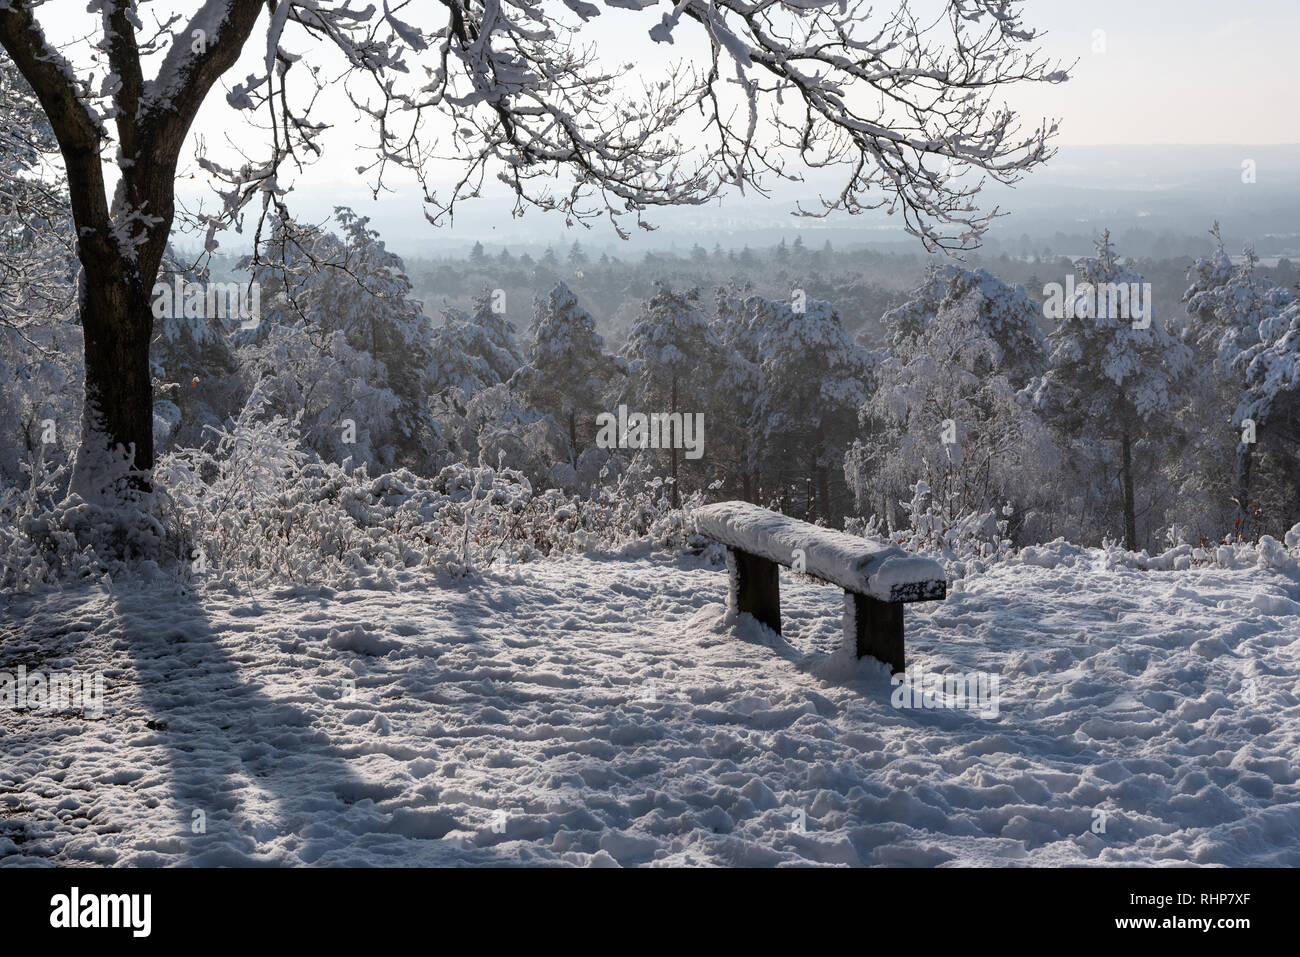 Jolie scène de neige, arbre et banc avec vue lointaine Banque D'Images